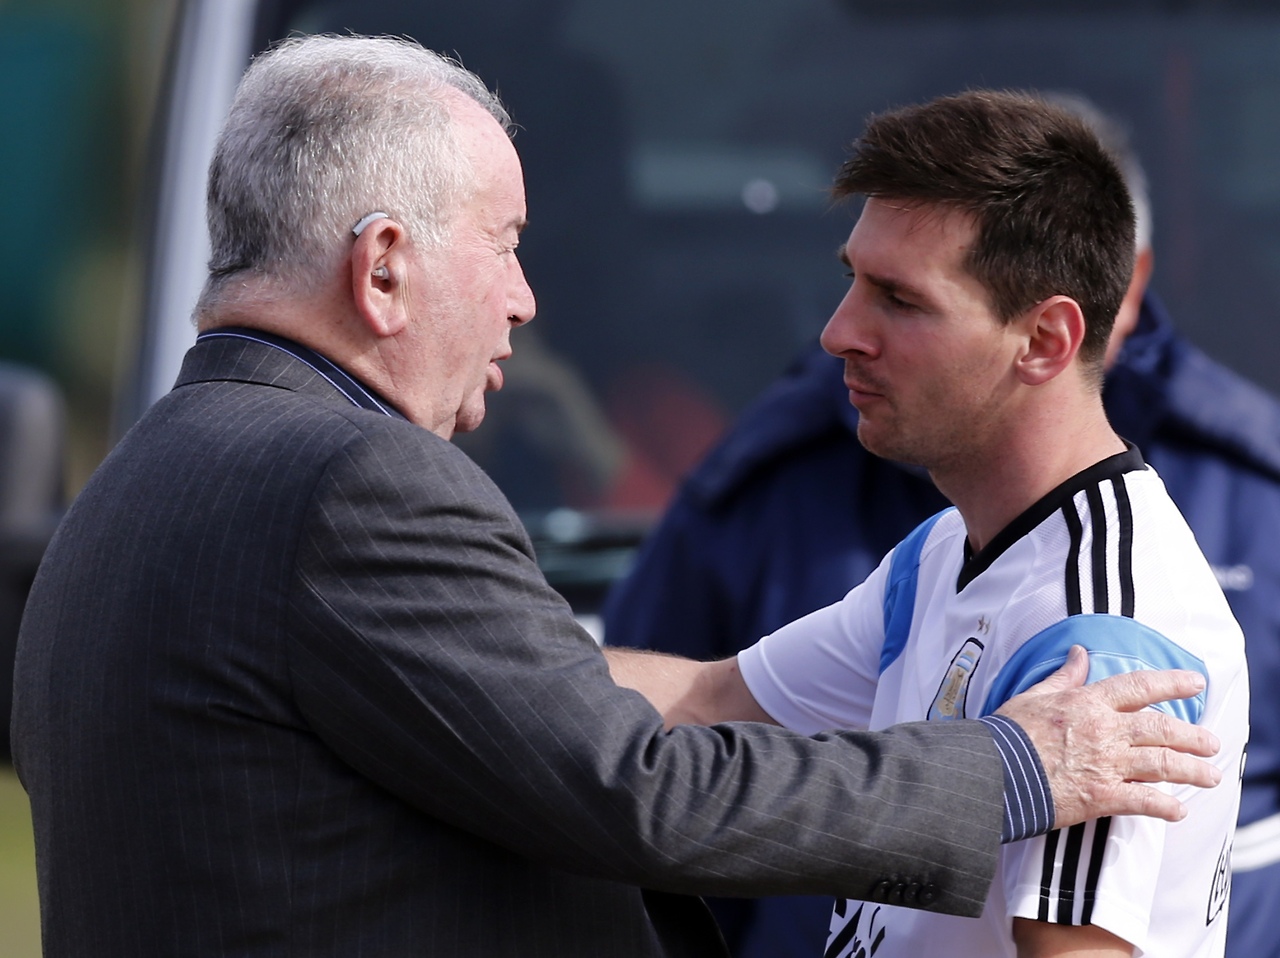 Como presidente de la AFA, Grondona convivió con las dos grandes figuras del fútbol mundial, primero, Maradona, luego el joven Messi